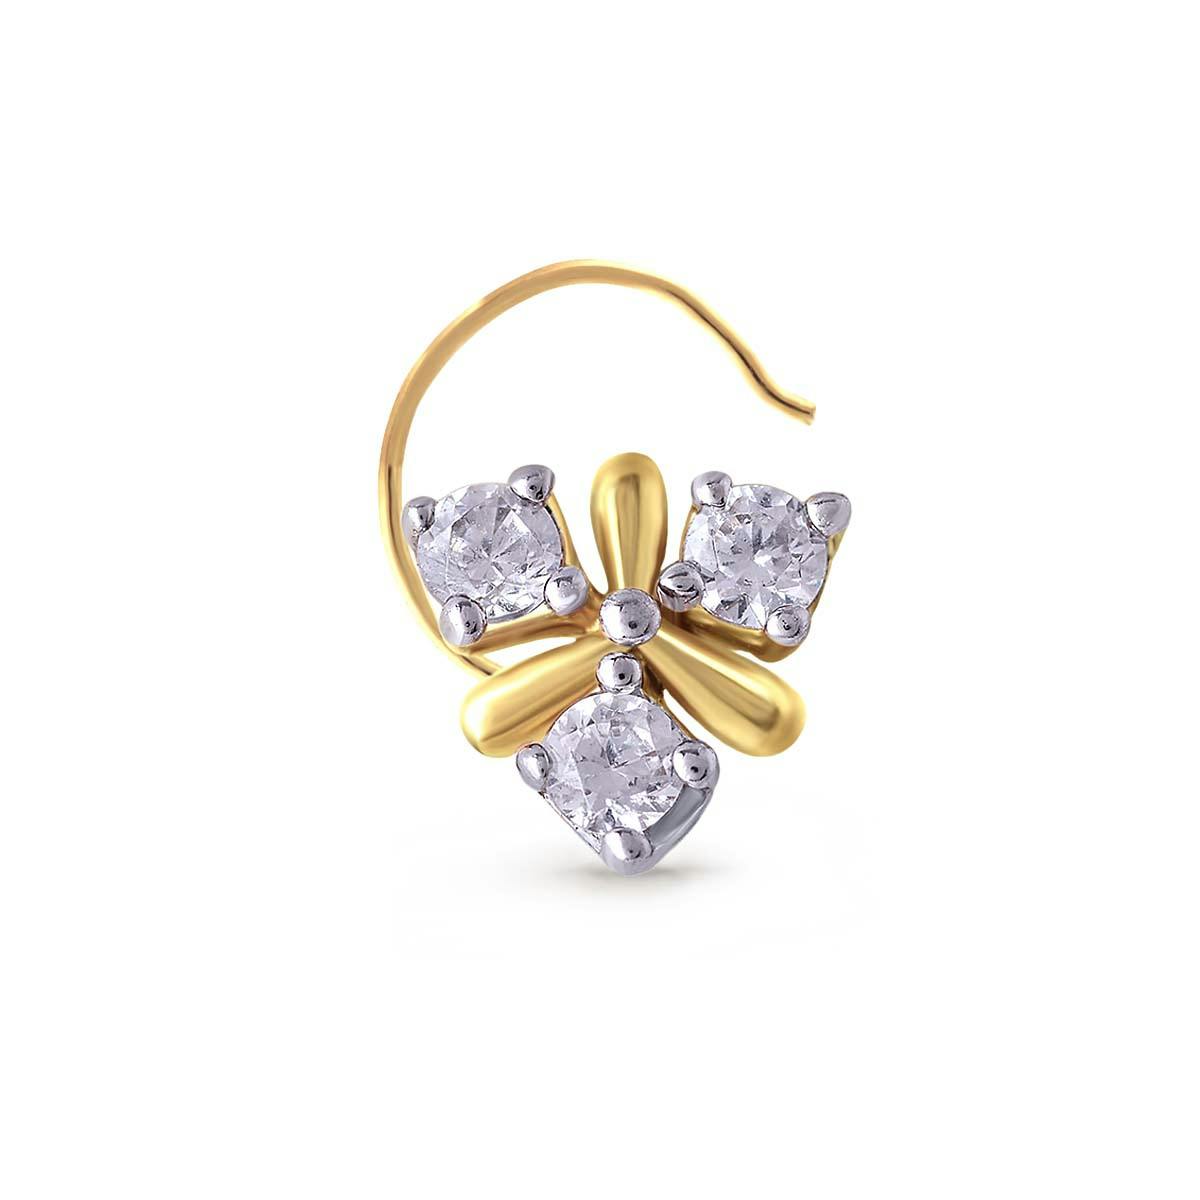 Enchanting Caduceus diamond nose pin